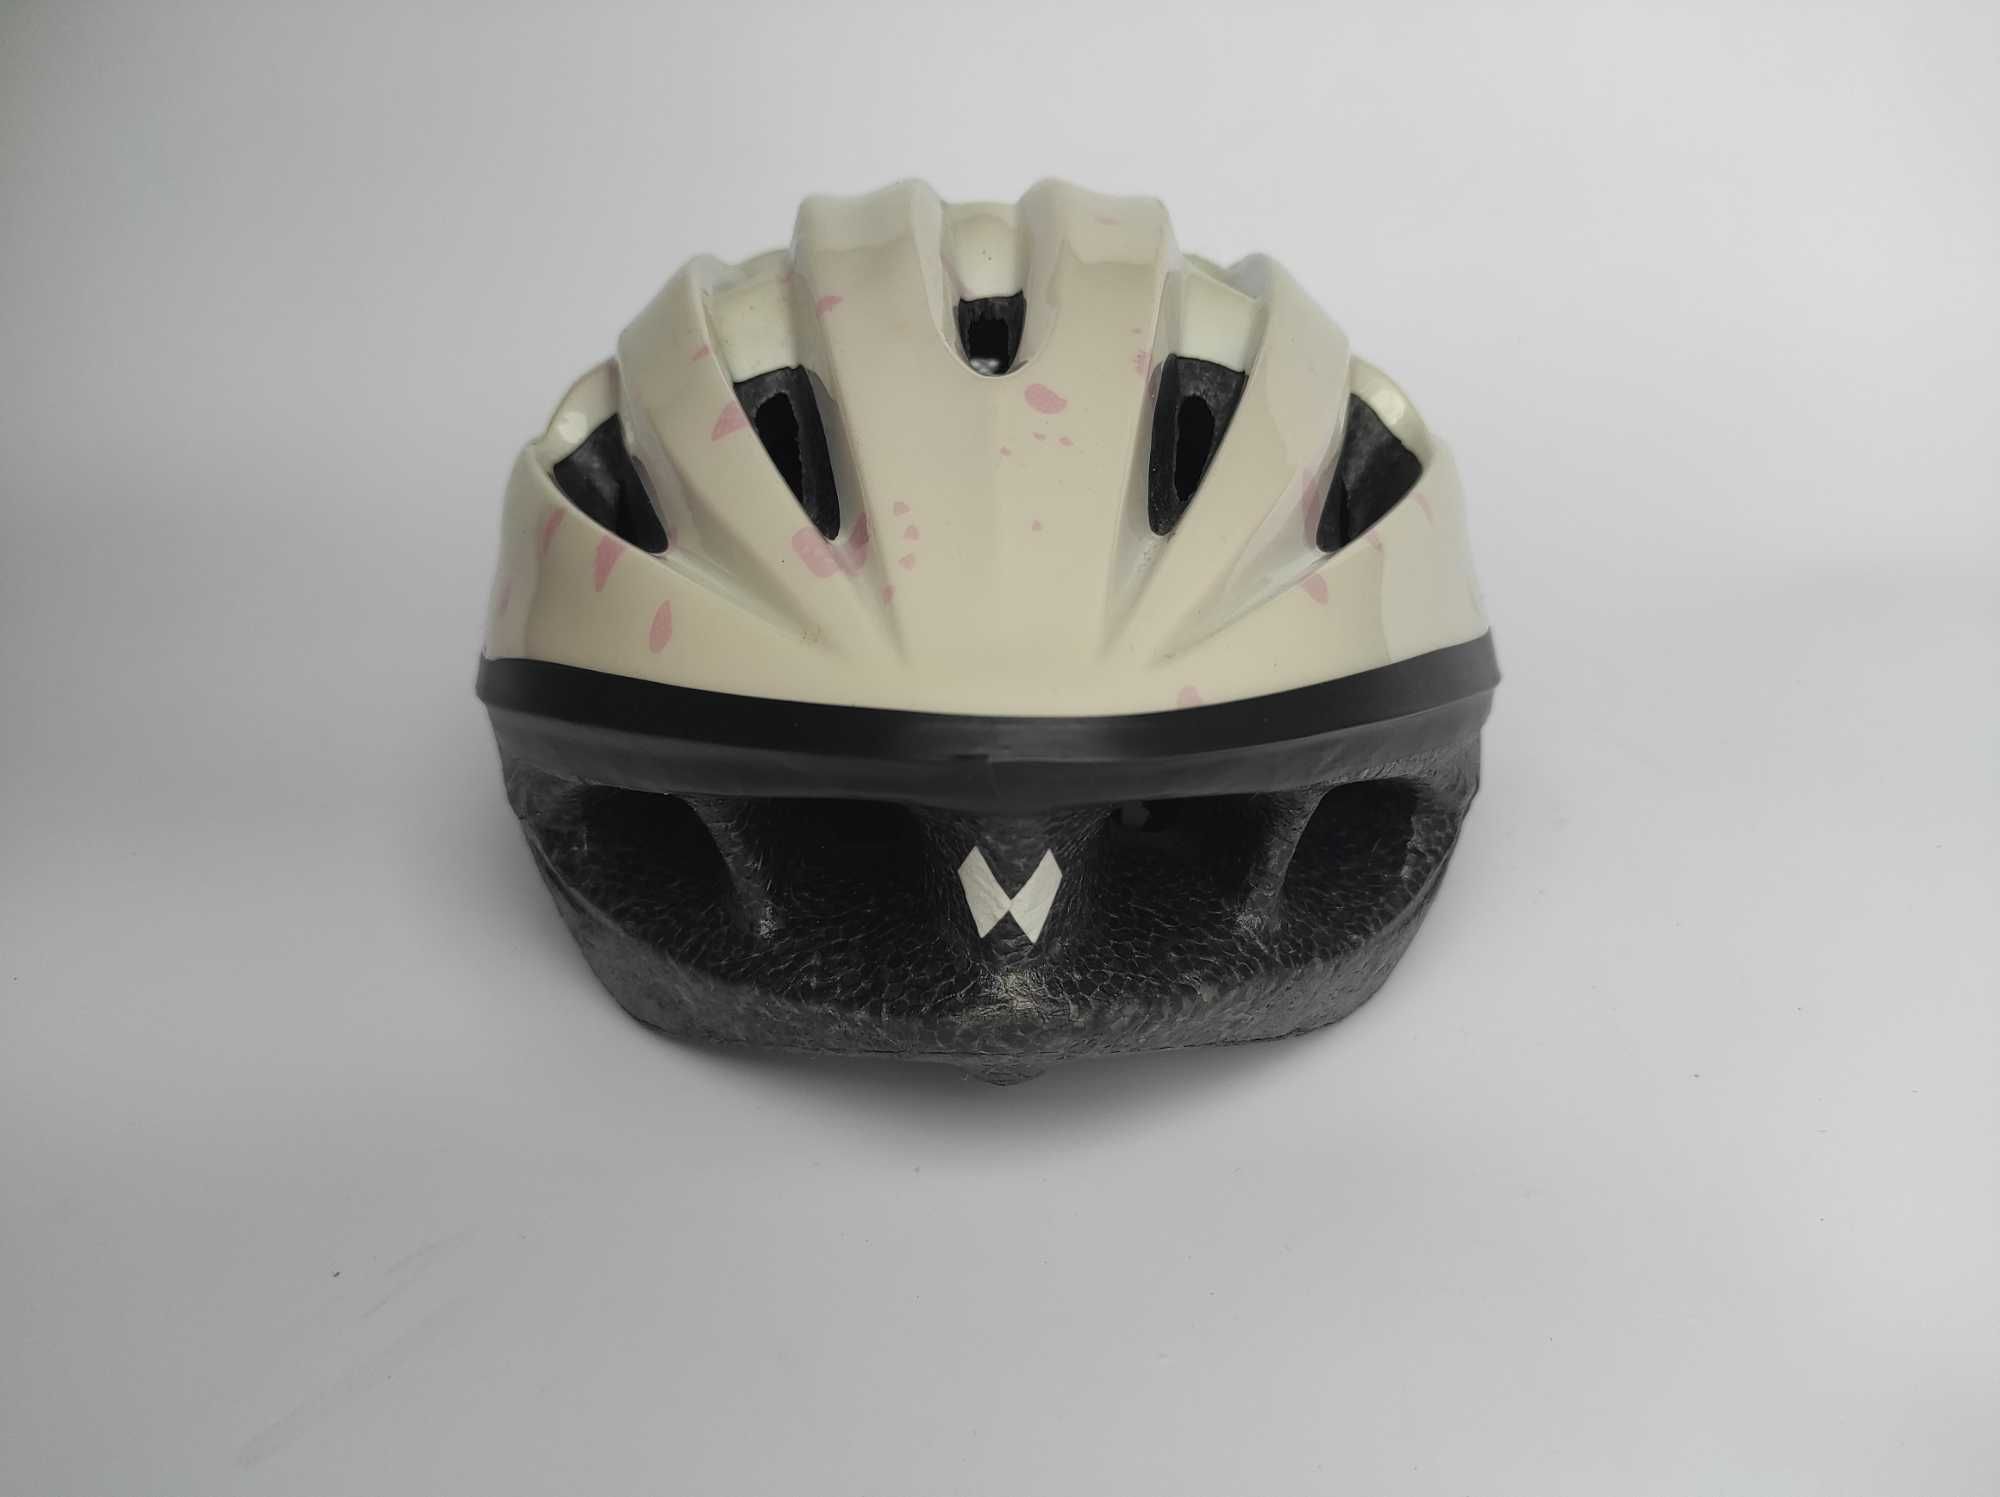 Детский защитный шлем Profex, размер 49-56см, велосипедный, Германия